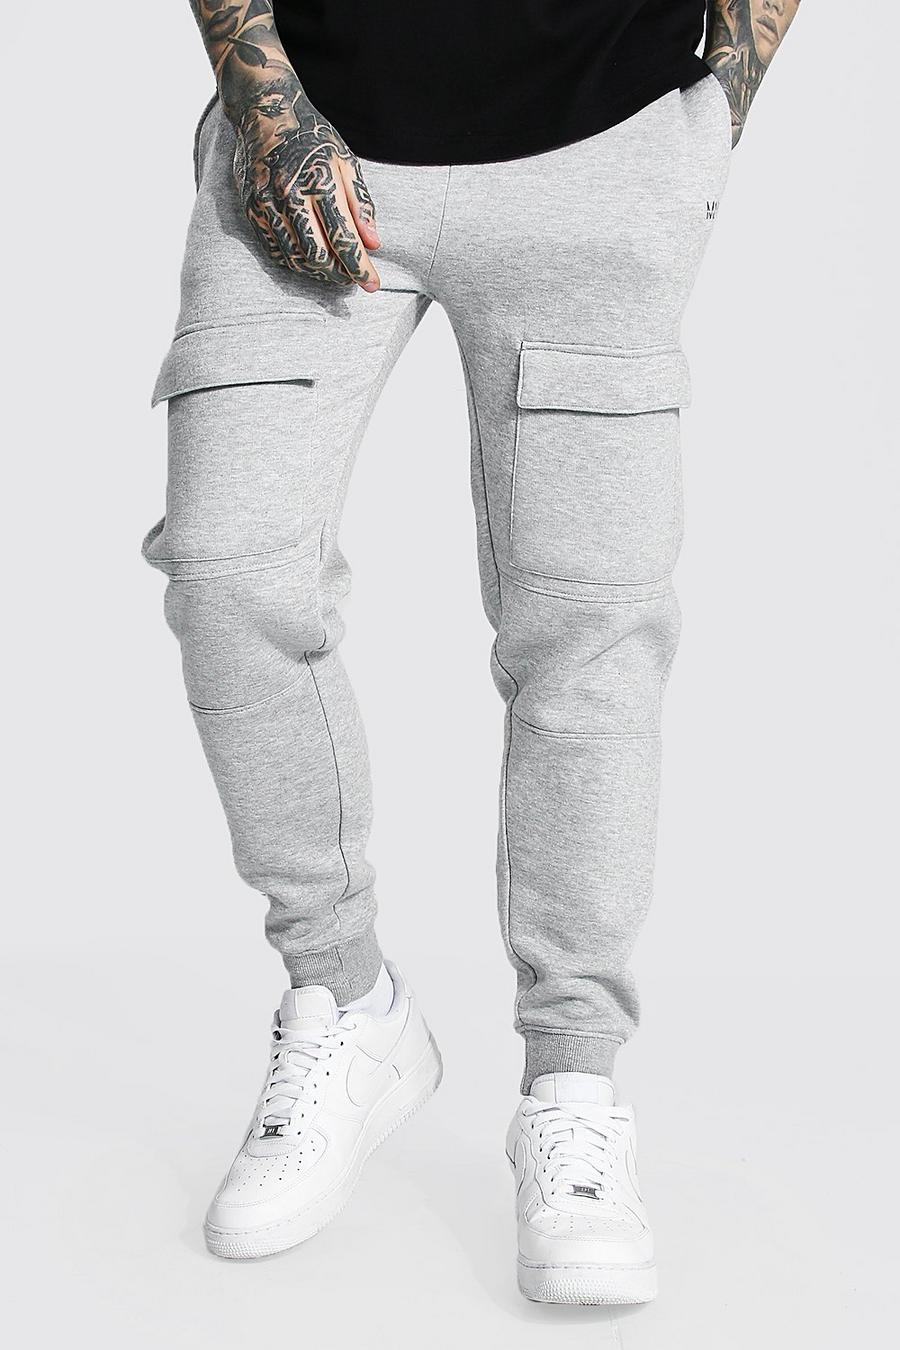 Pantaloni tuta Cargo Man Slim Fit con pannelli e tasche frontali, Grey marl grigio